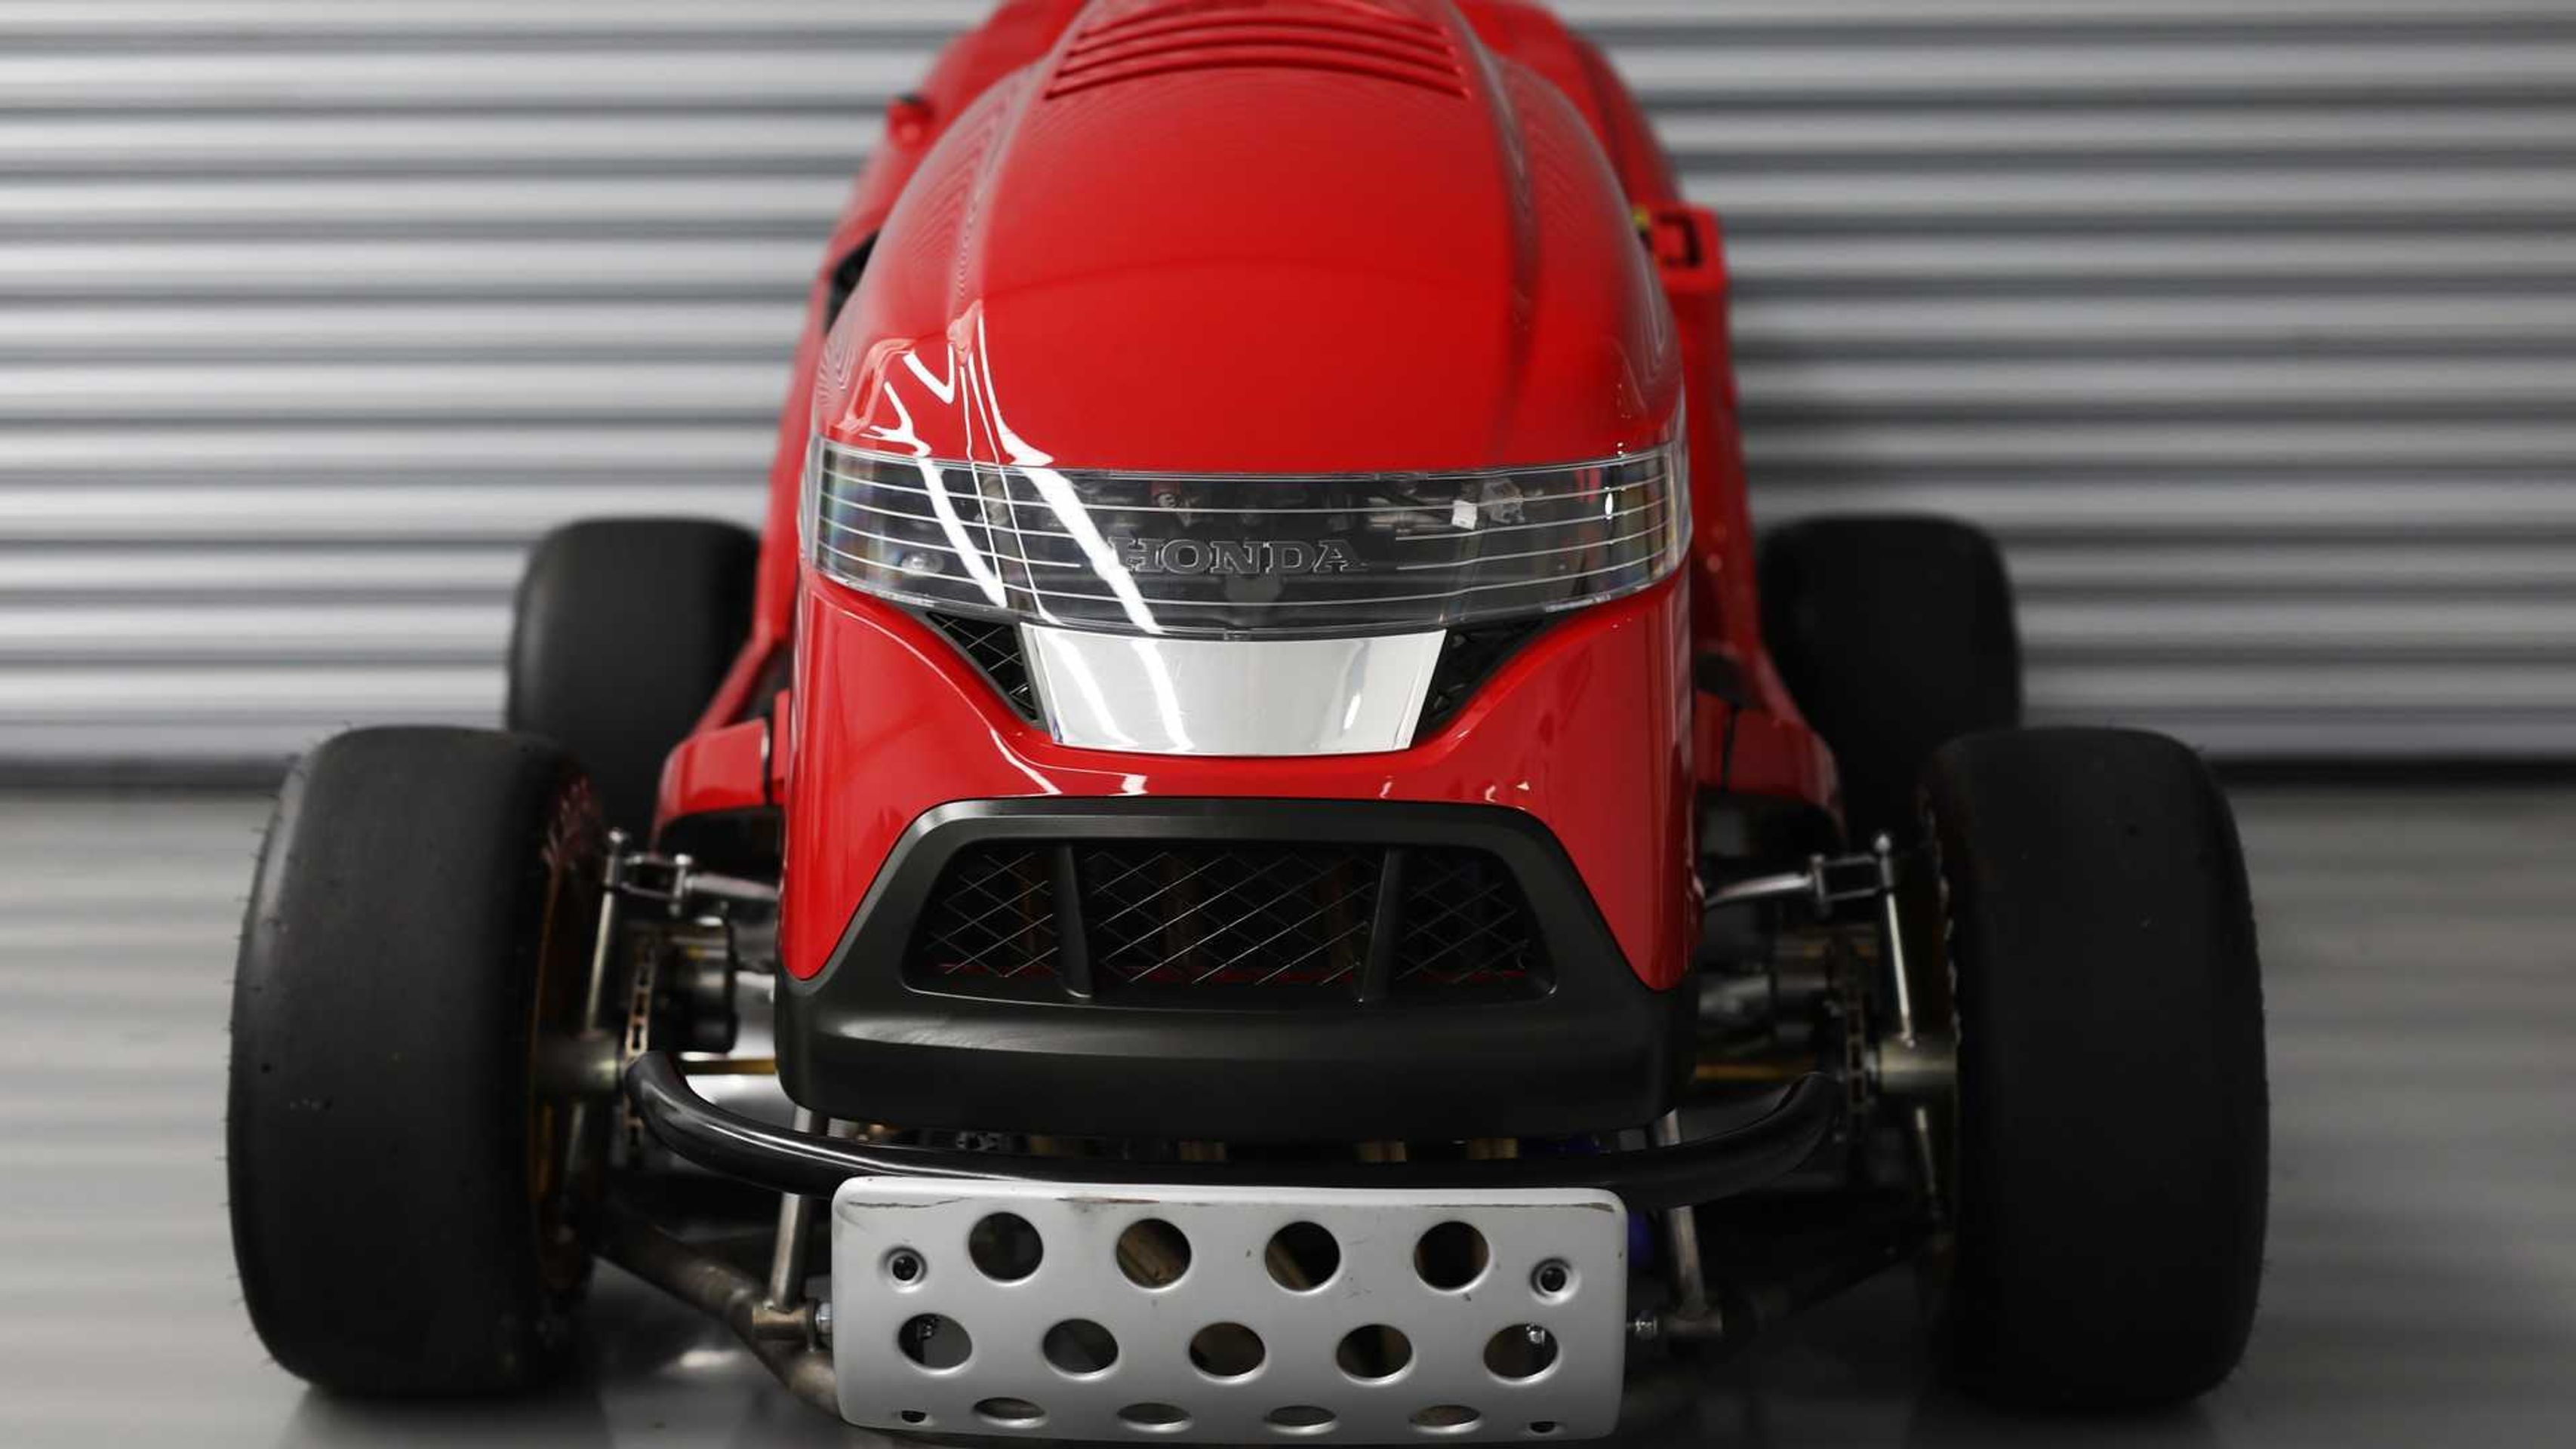 Honda Mean Mower V2 - 15 - Fotogalerie: Nejrychlejší sekačka na světě (3/9)